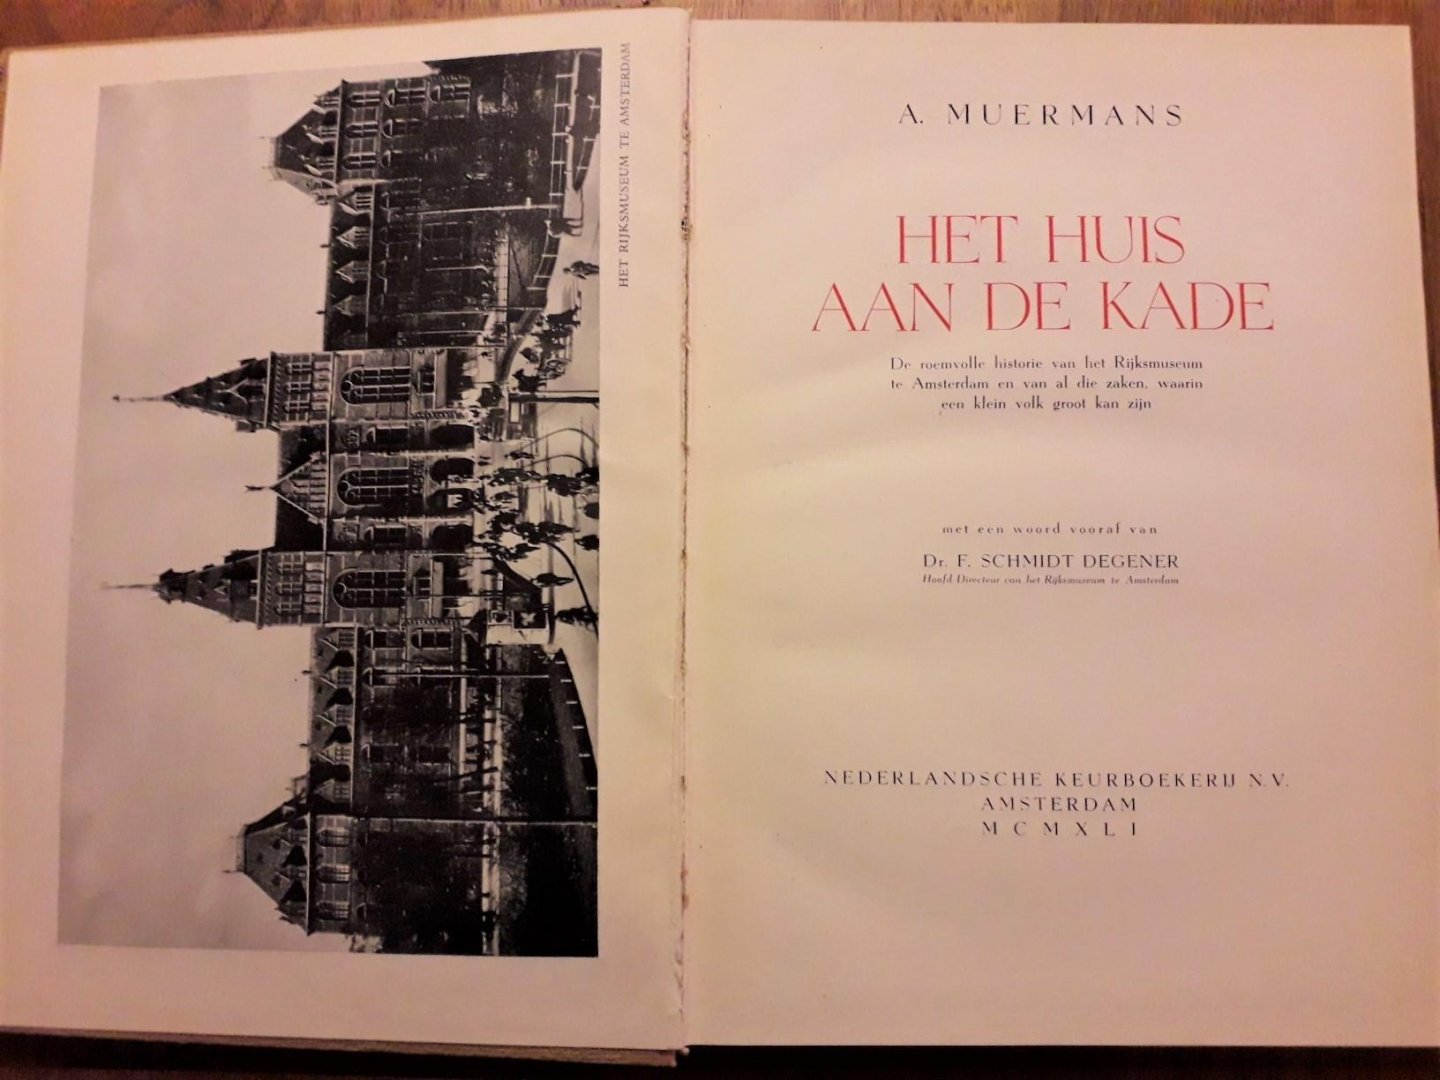 Muermans, A. - Het huis aan de kade. De roemvolle historie van het Rijksmuseum te Amsterdam